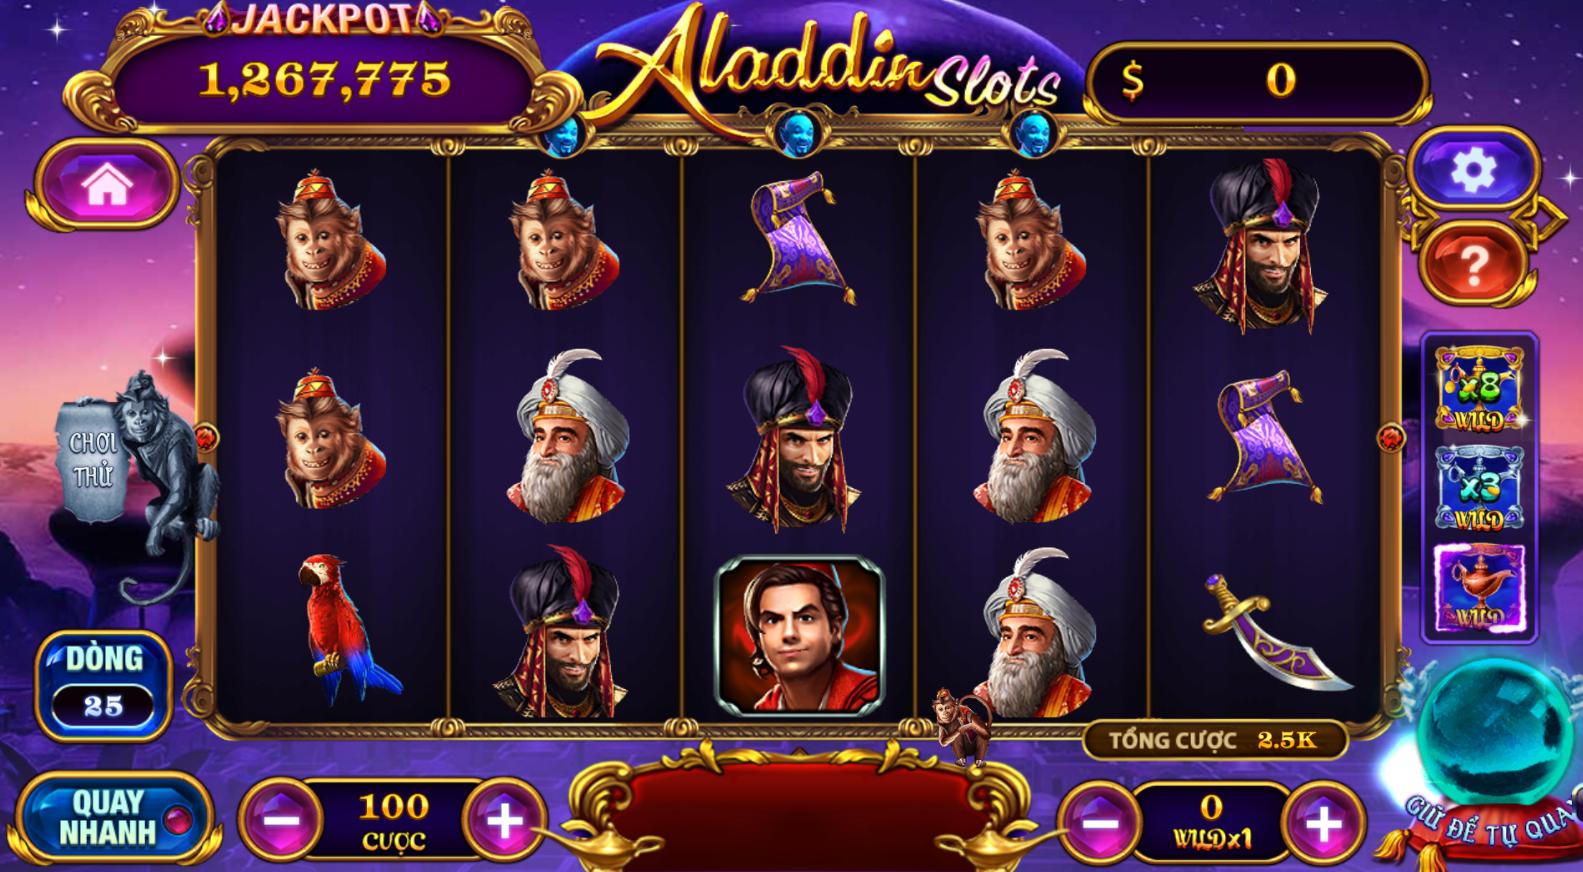 Bật mí mẹo làm giàu nhanh chóng cùng game nổ hũ Aladdin tại 789club